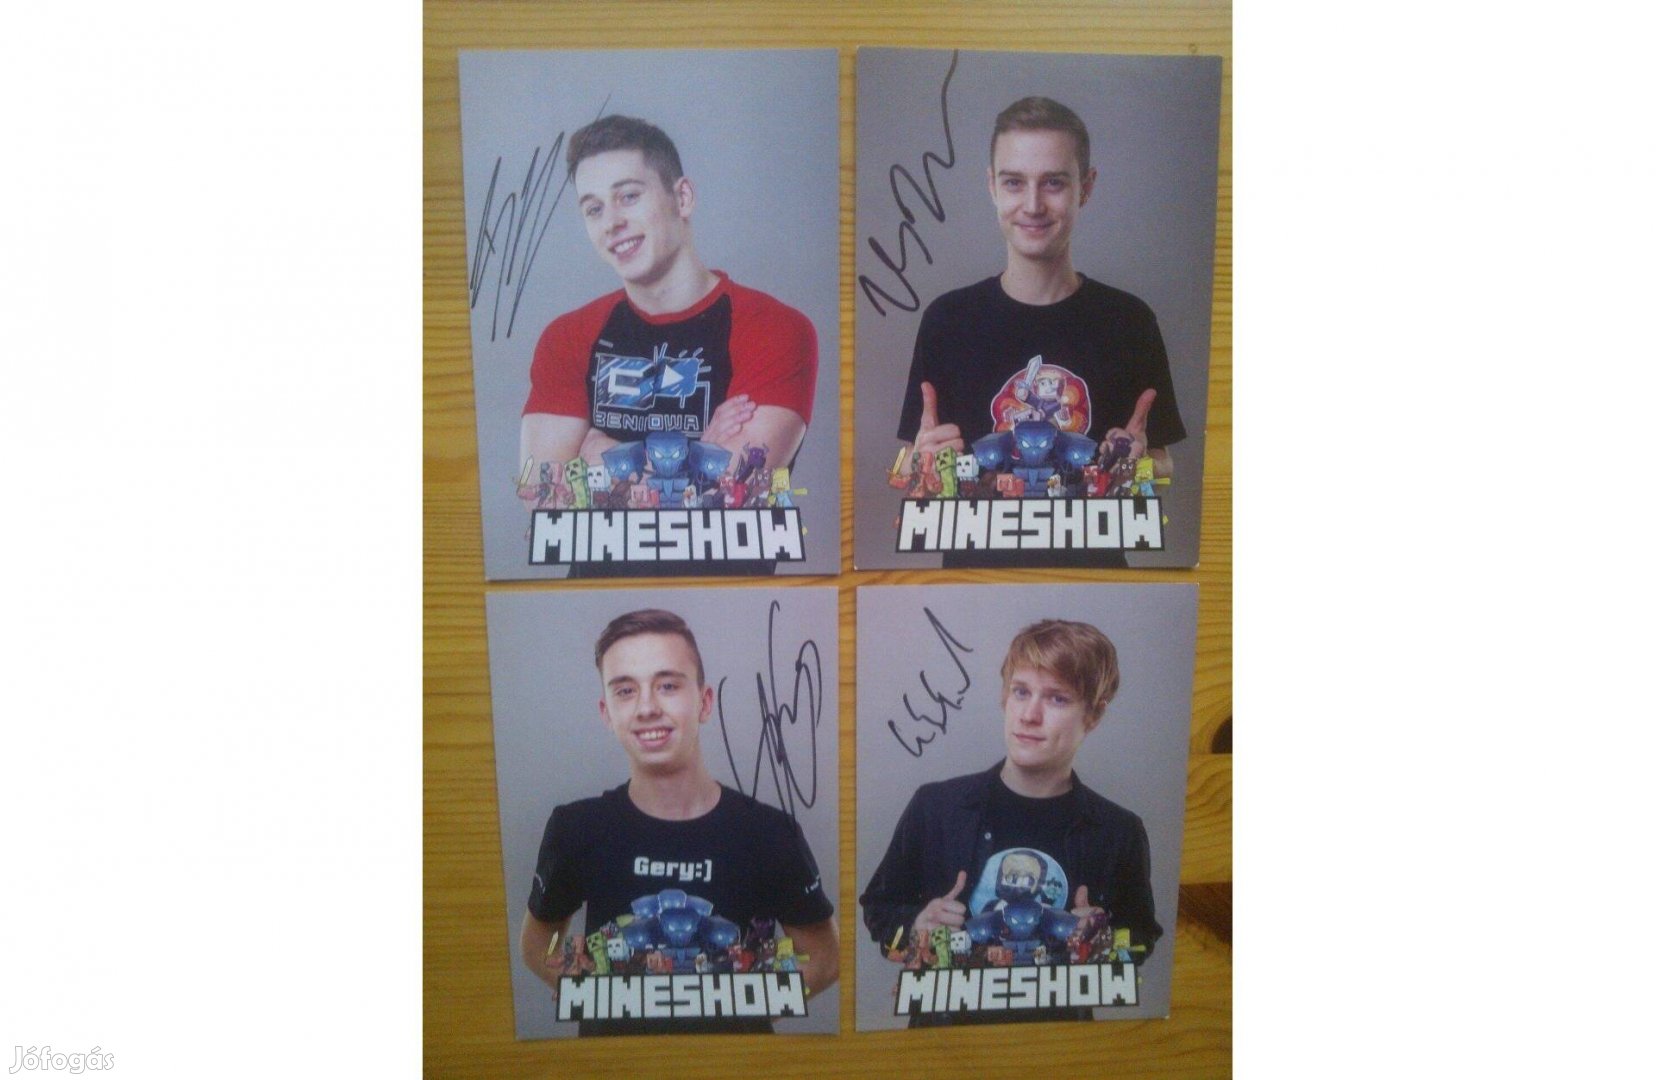 Mineshow Minecraft 4 db autogramkártya eredeti aláírással